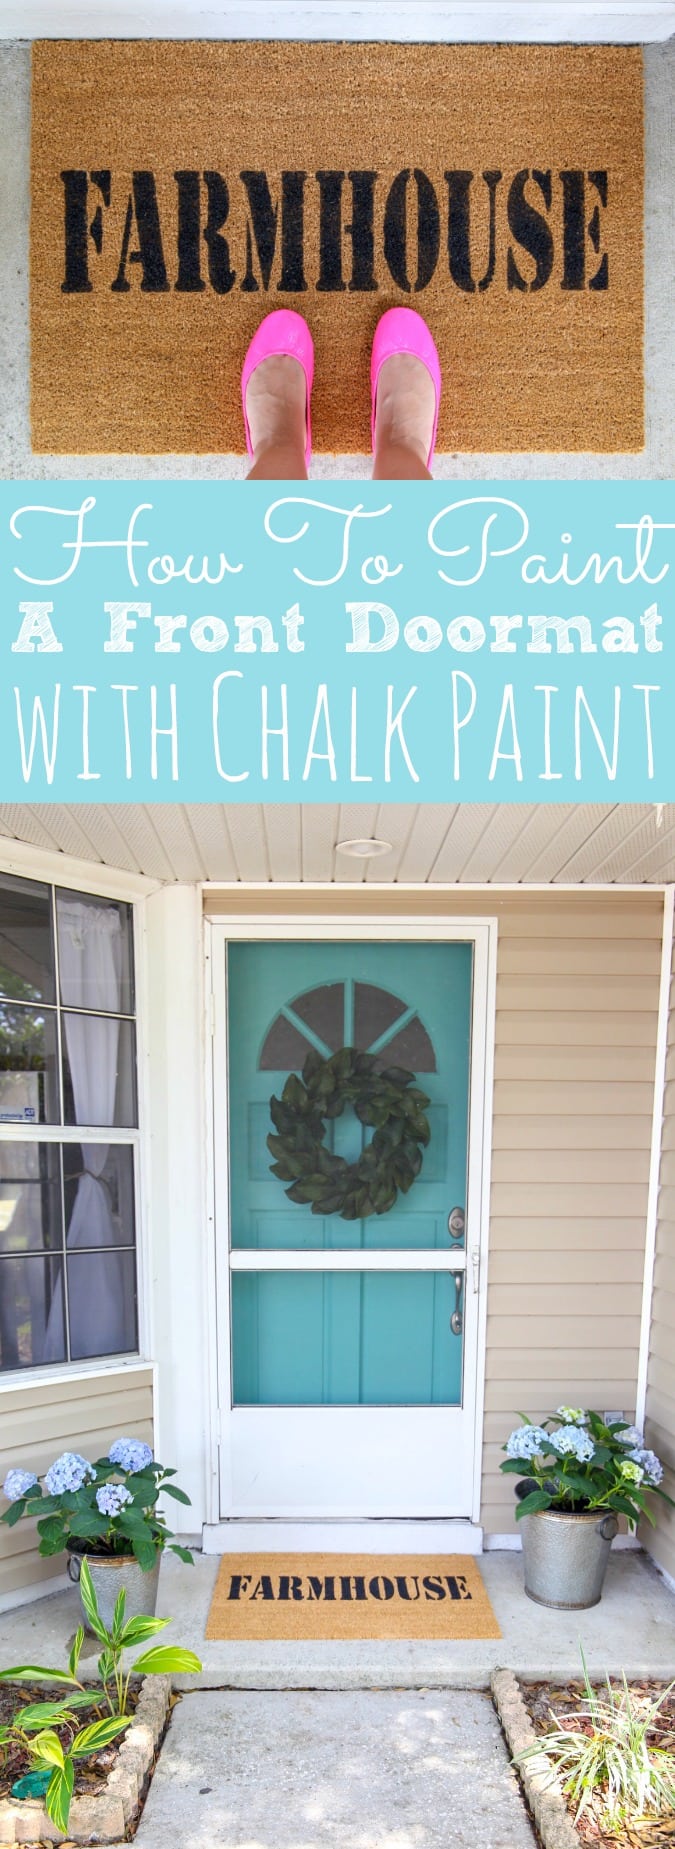 DIY Custom Door Mat With Chalk Paint